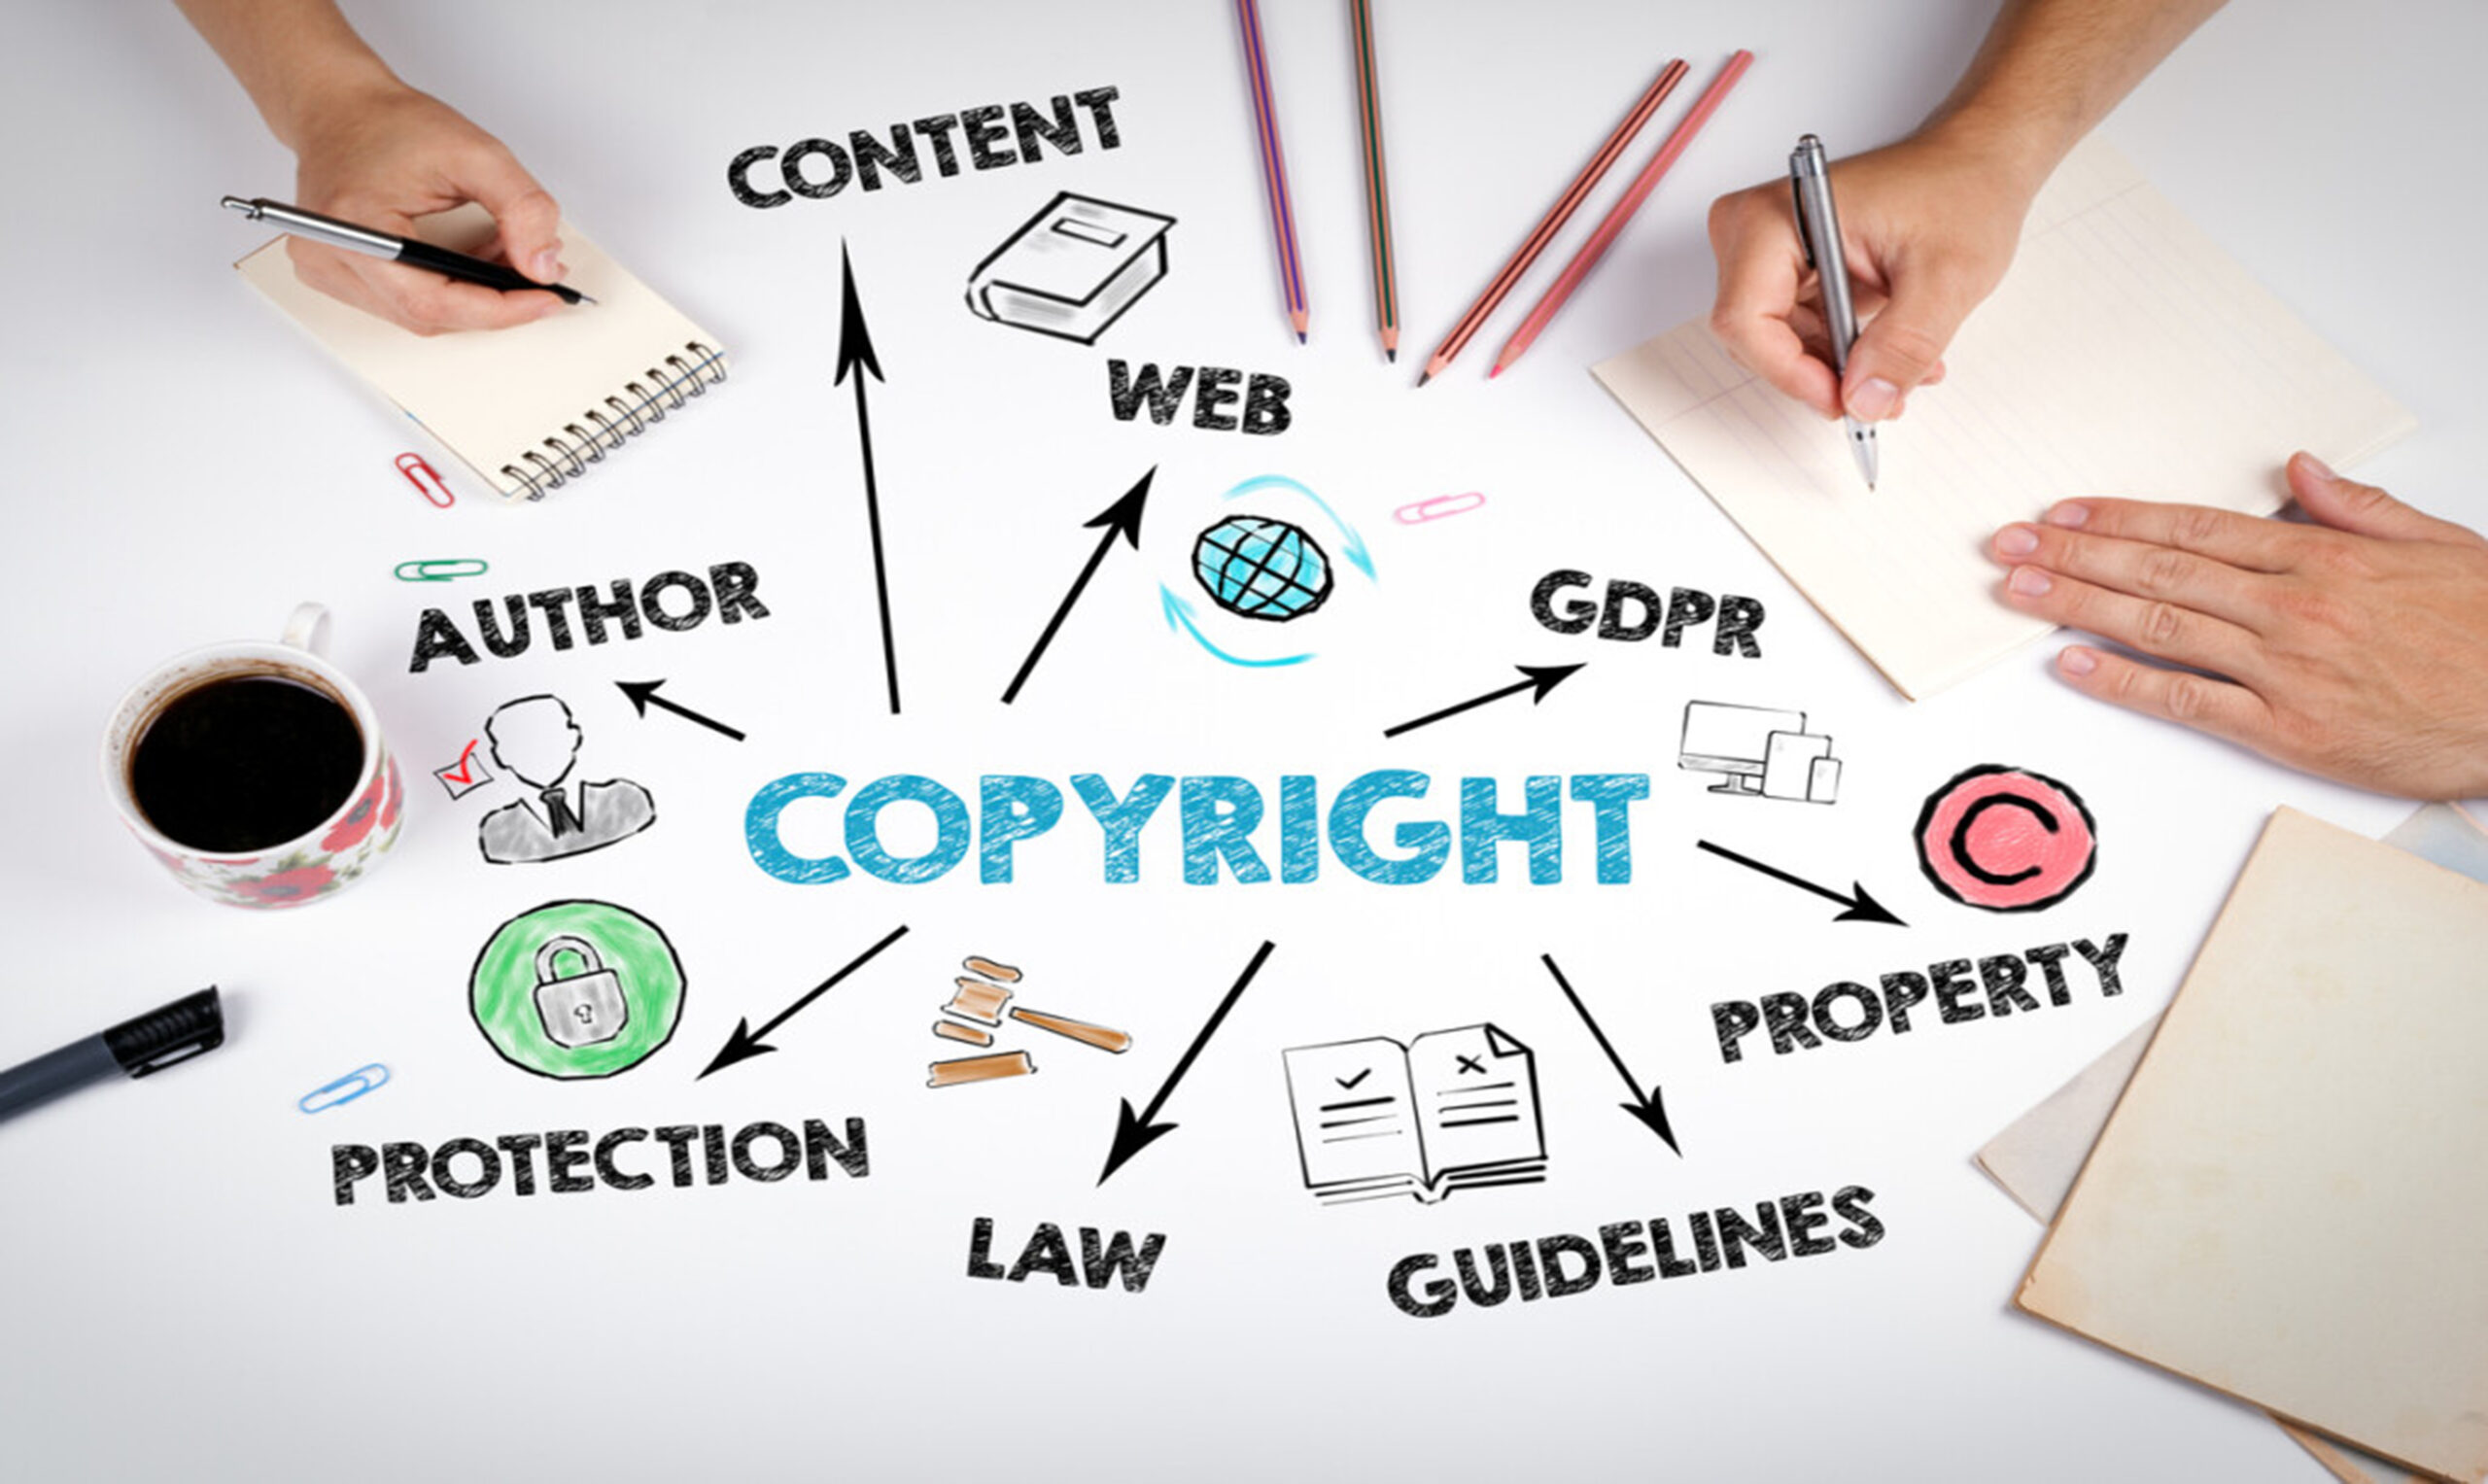 Quyền tác giả là  là quyền của các tổ chức hoặc cá nhân đối với tác phẩm do mình sở hữu hoặc sáng tạo ra